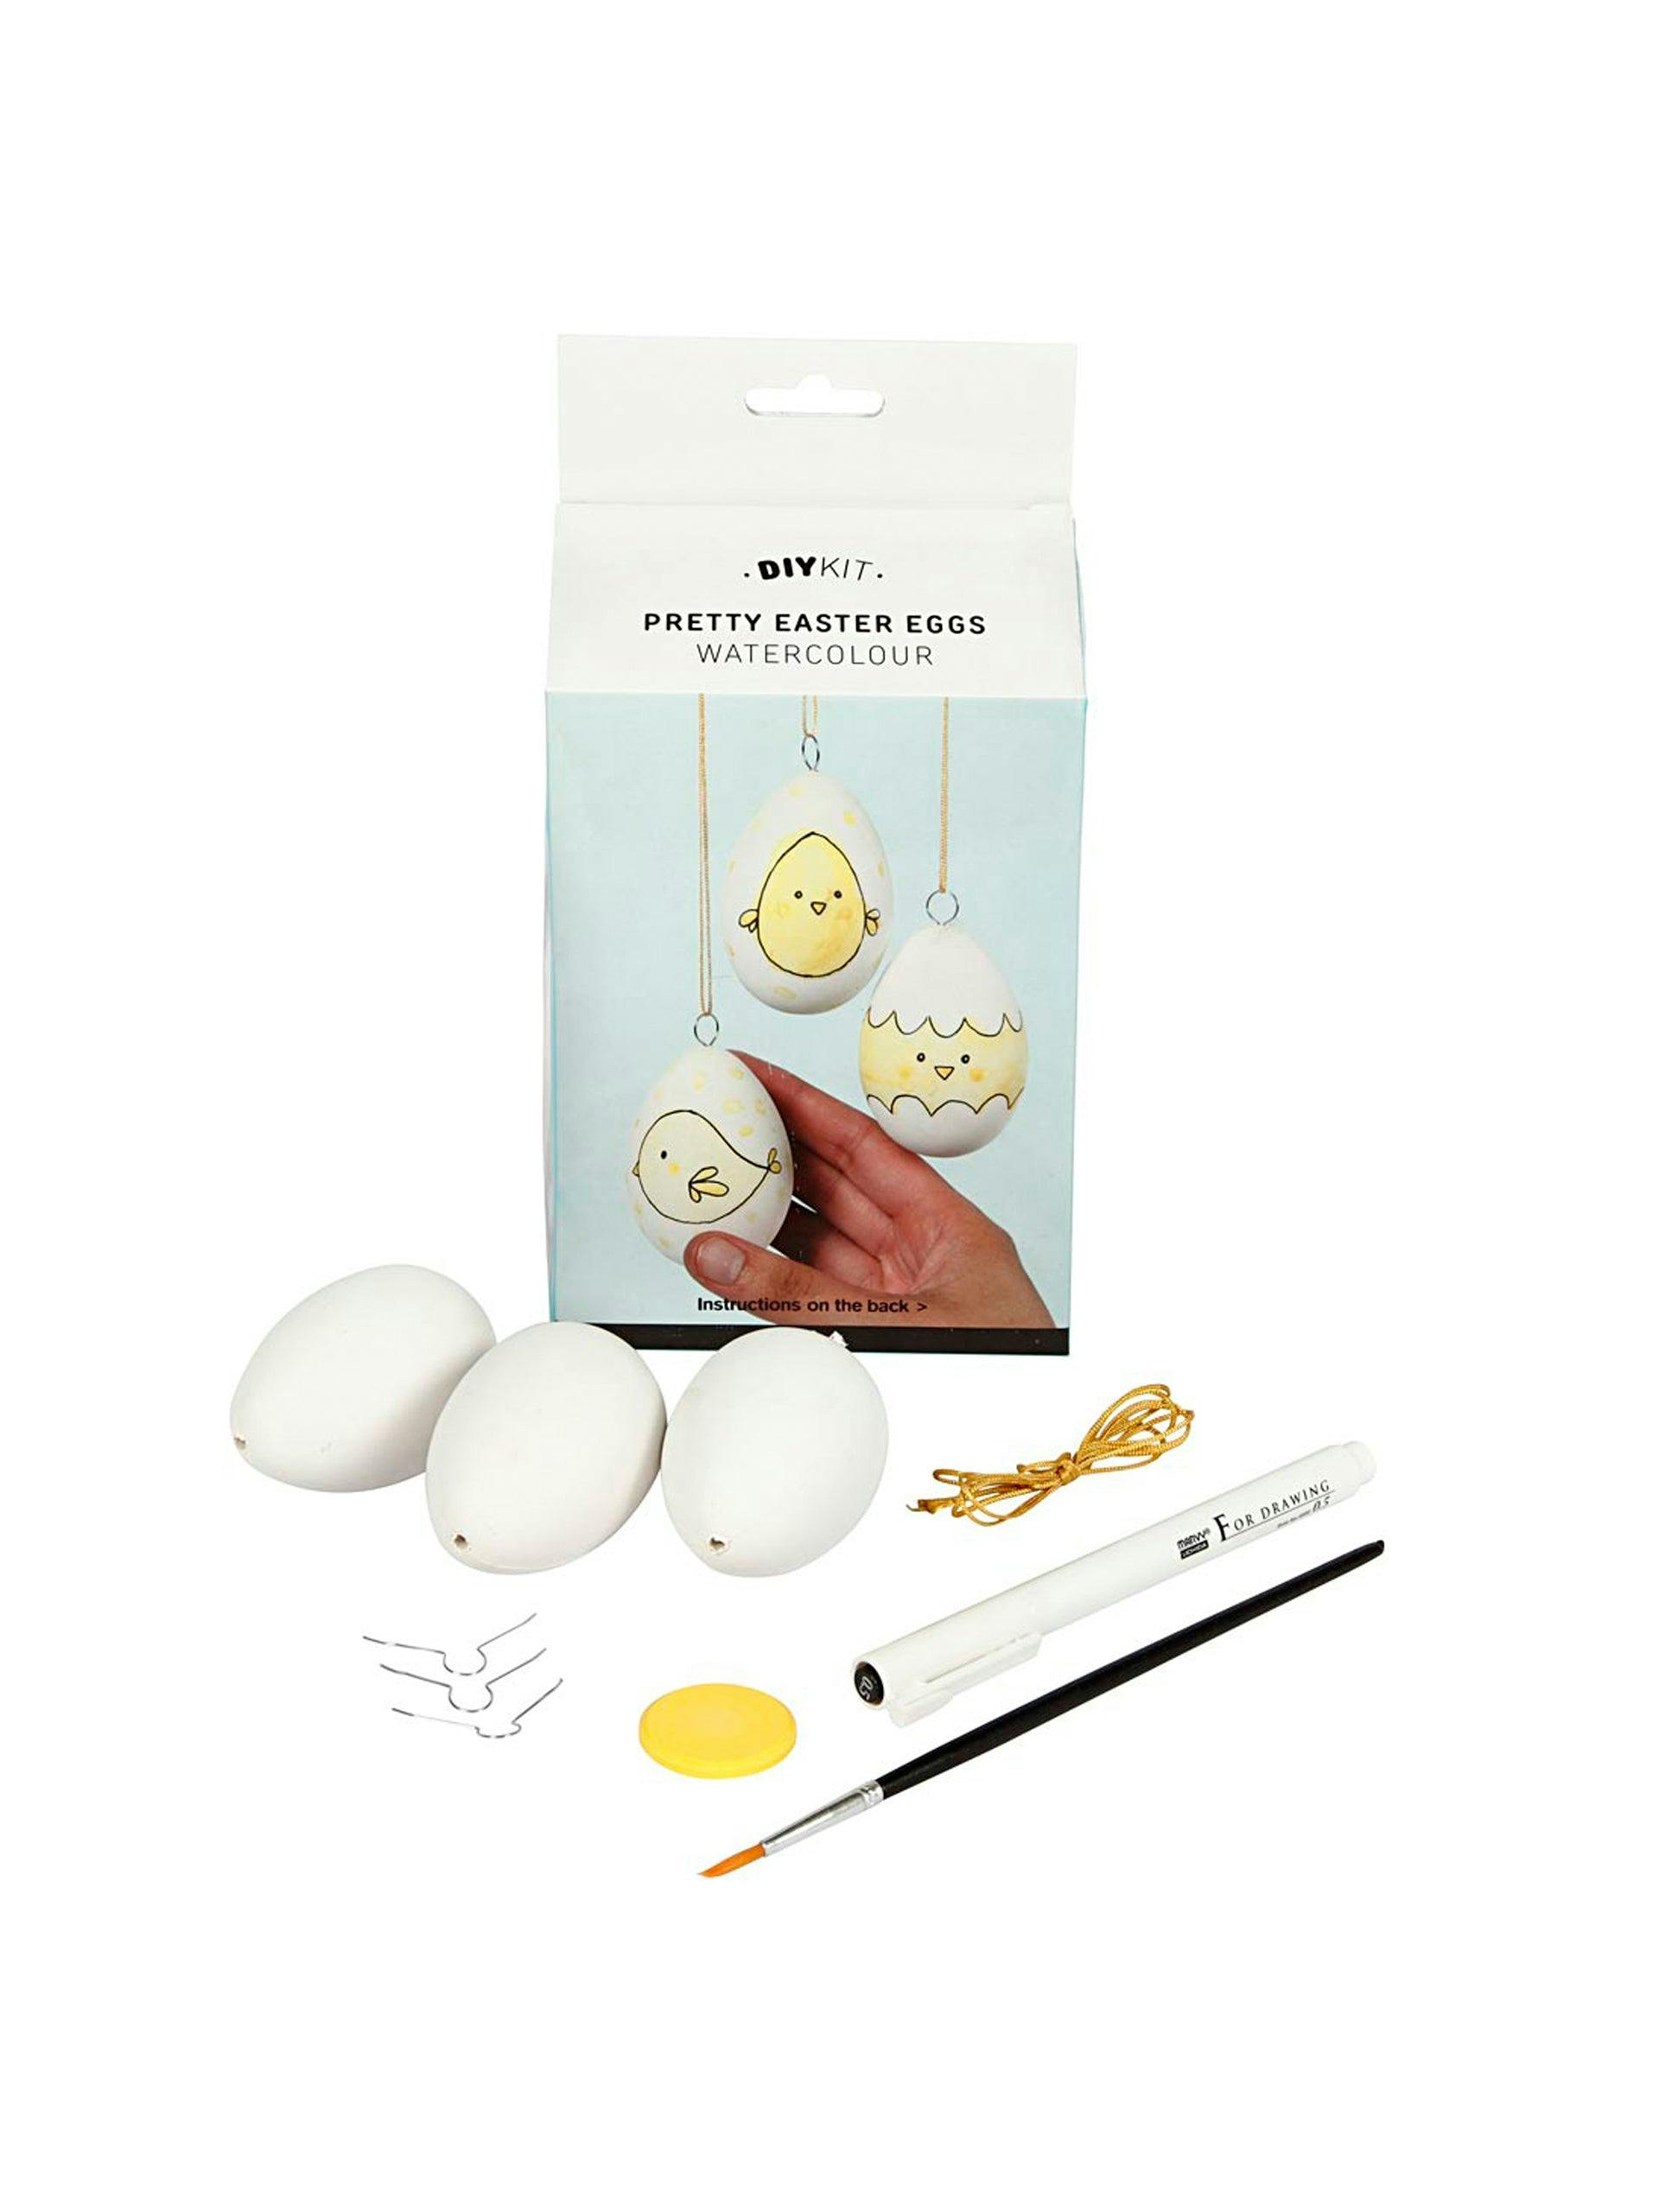 DIY decorative Easter egg kit